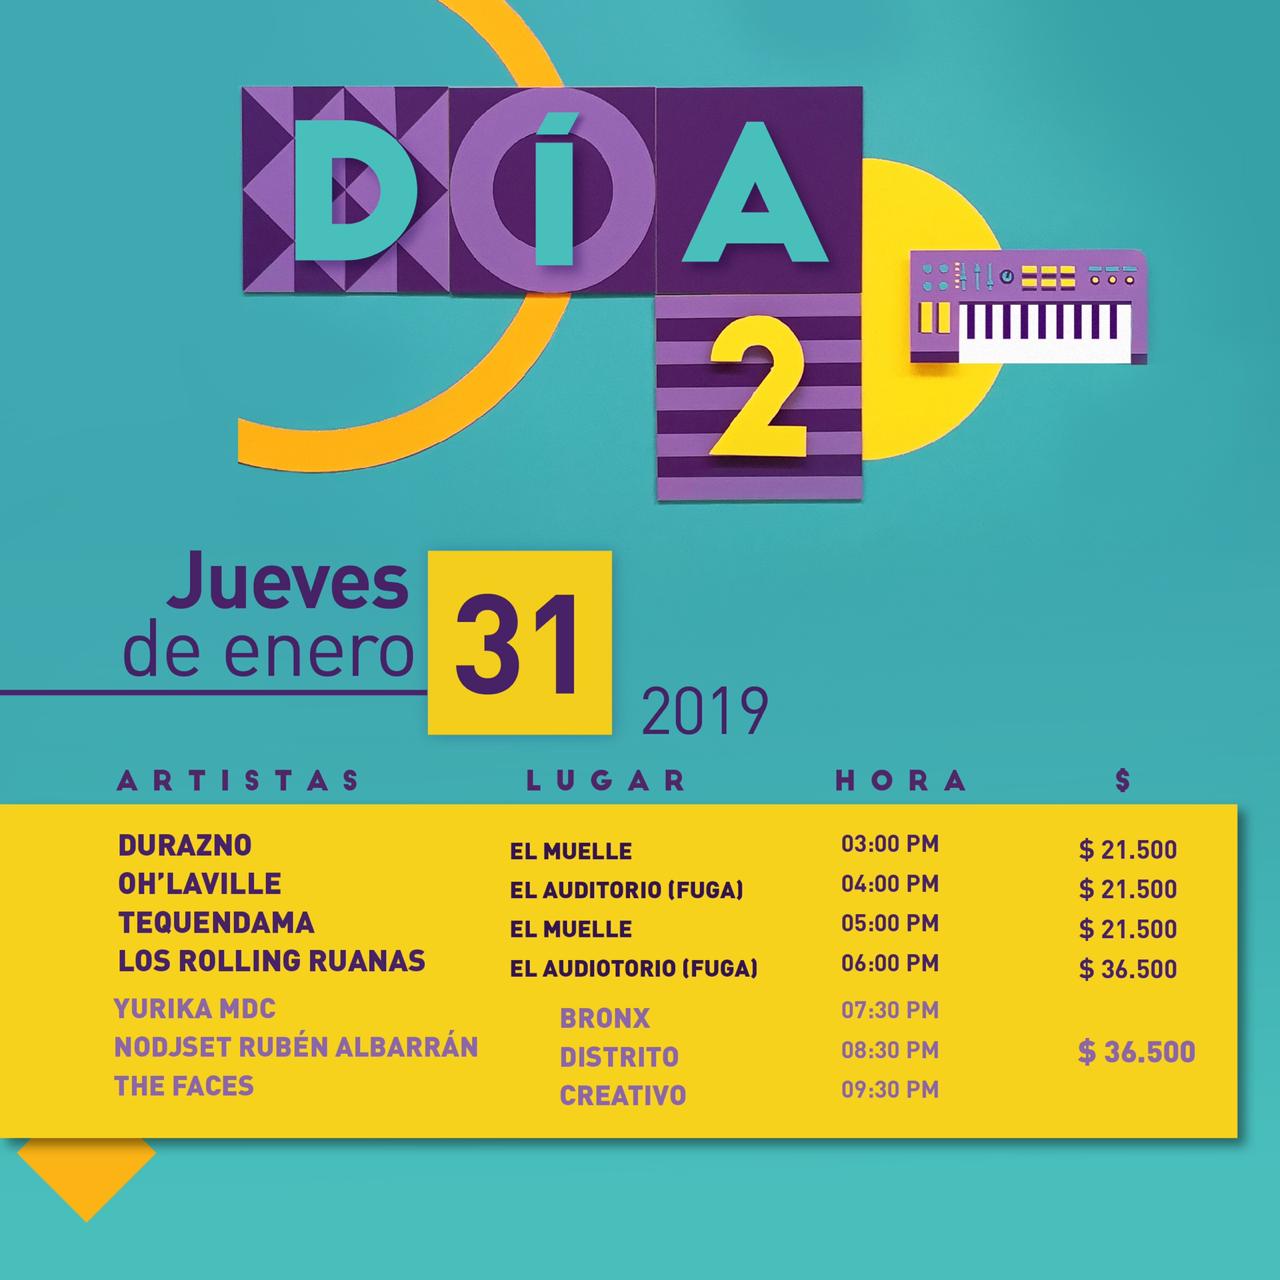 Programación Festival Centro 2019 en Bogotá.